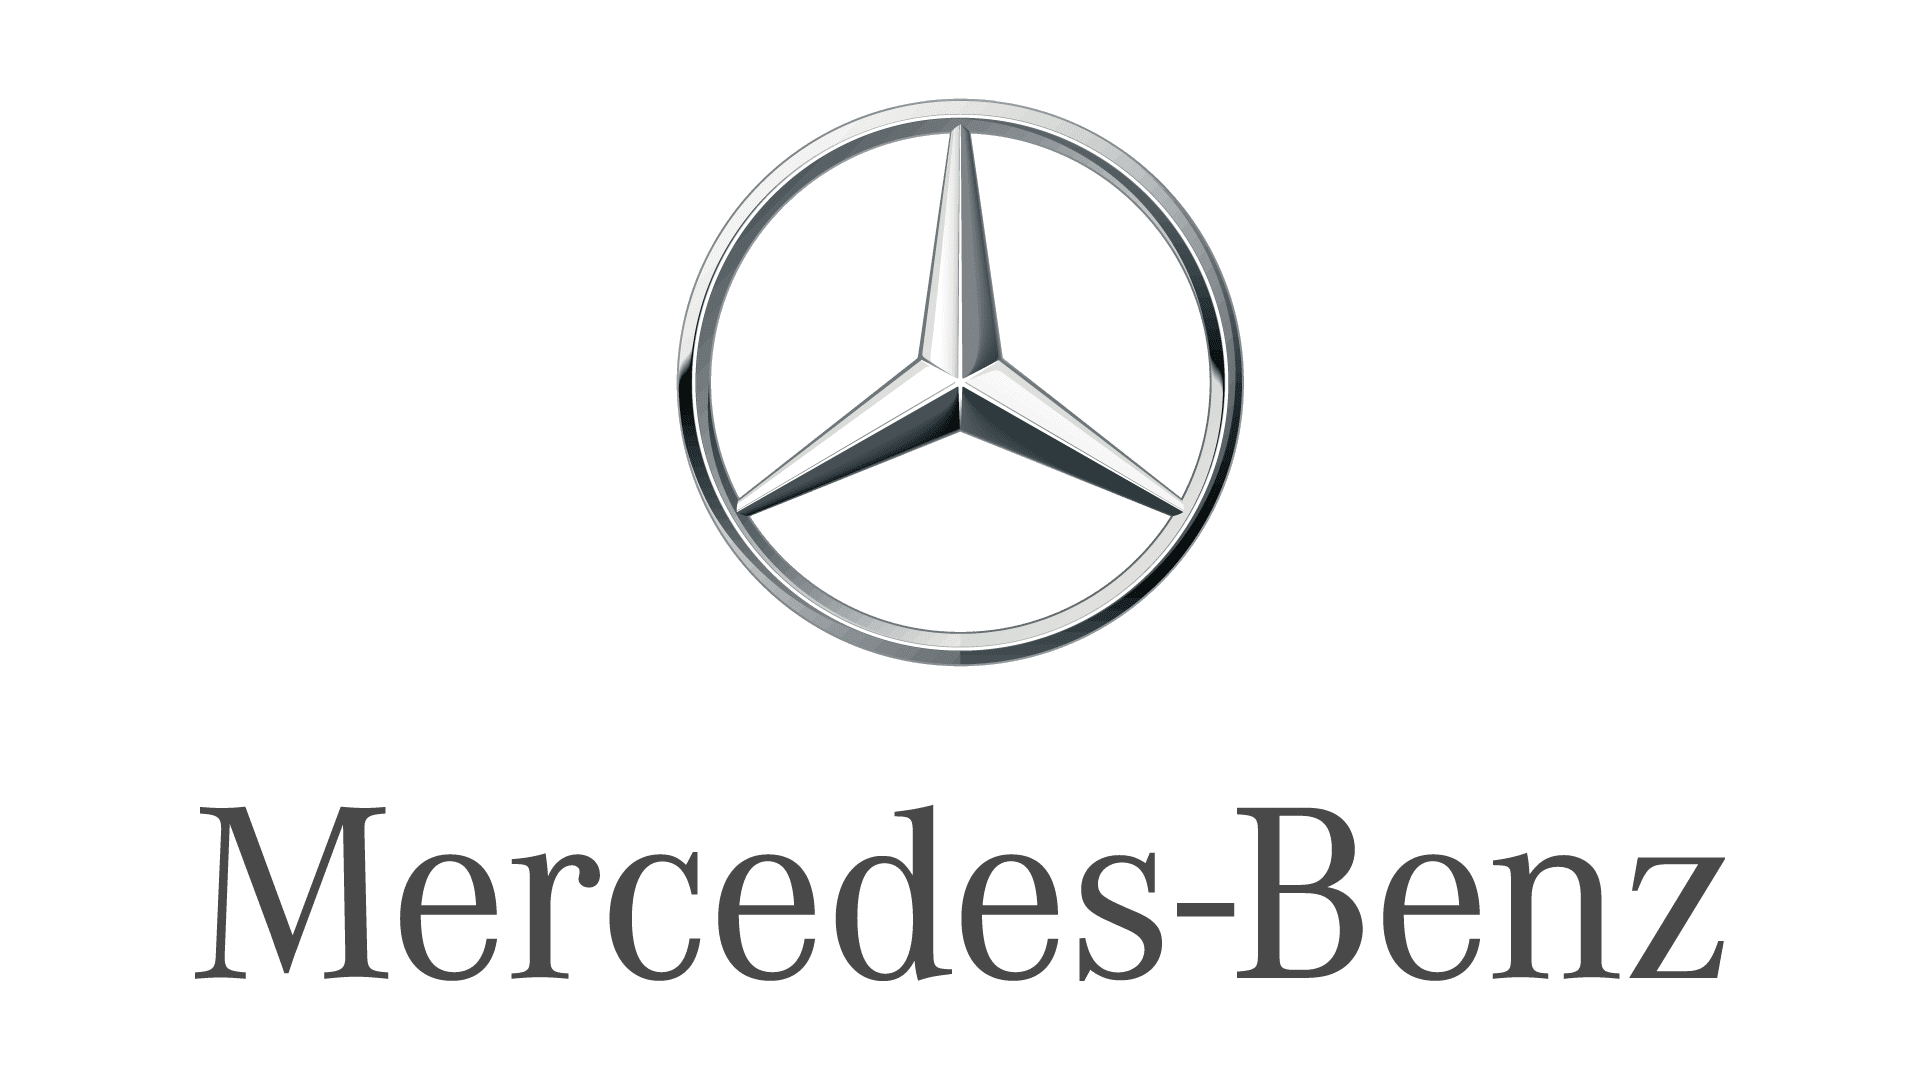 Комфорт Mercedes-Benz GLA Основные функциональные пакеты оборудования комфорта #6